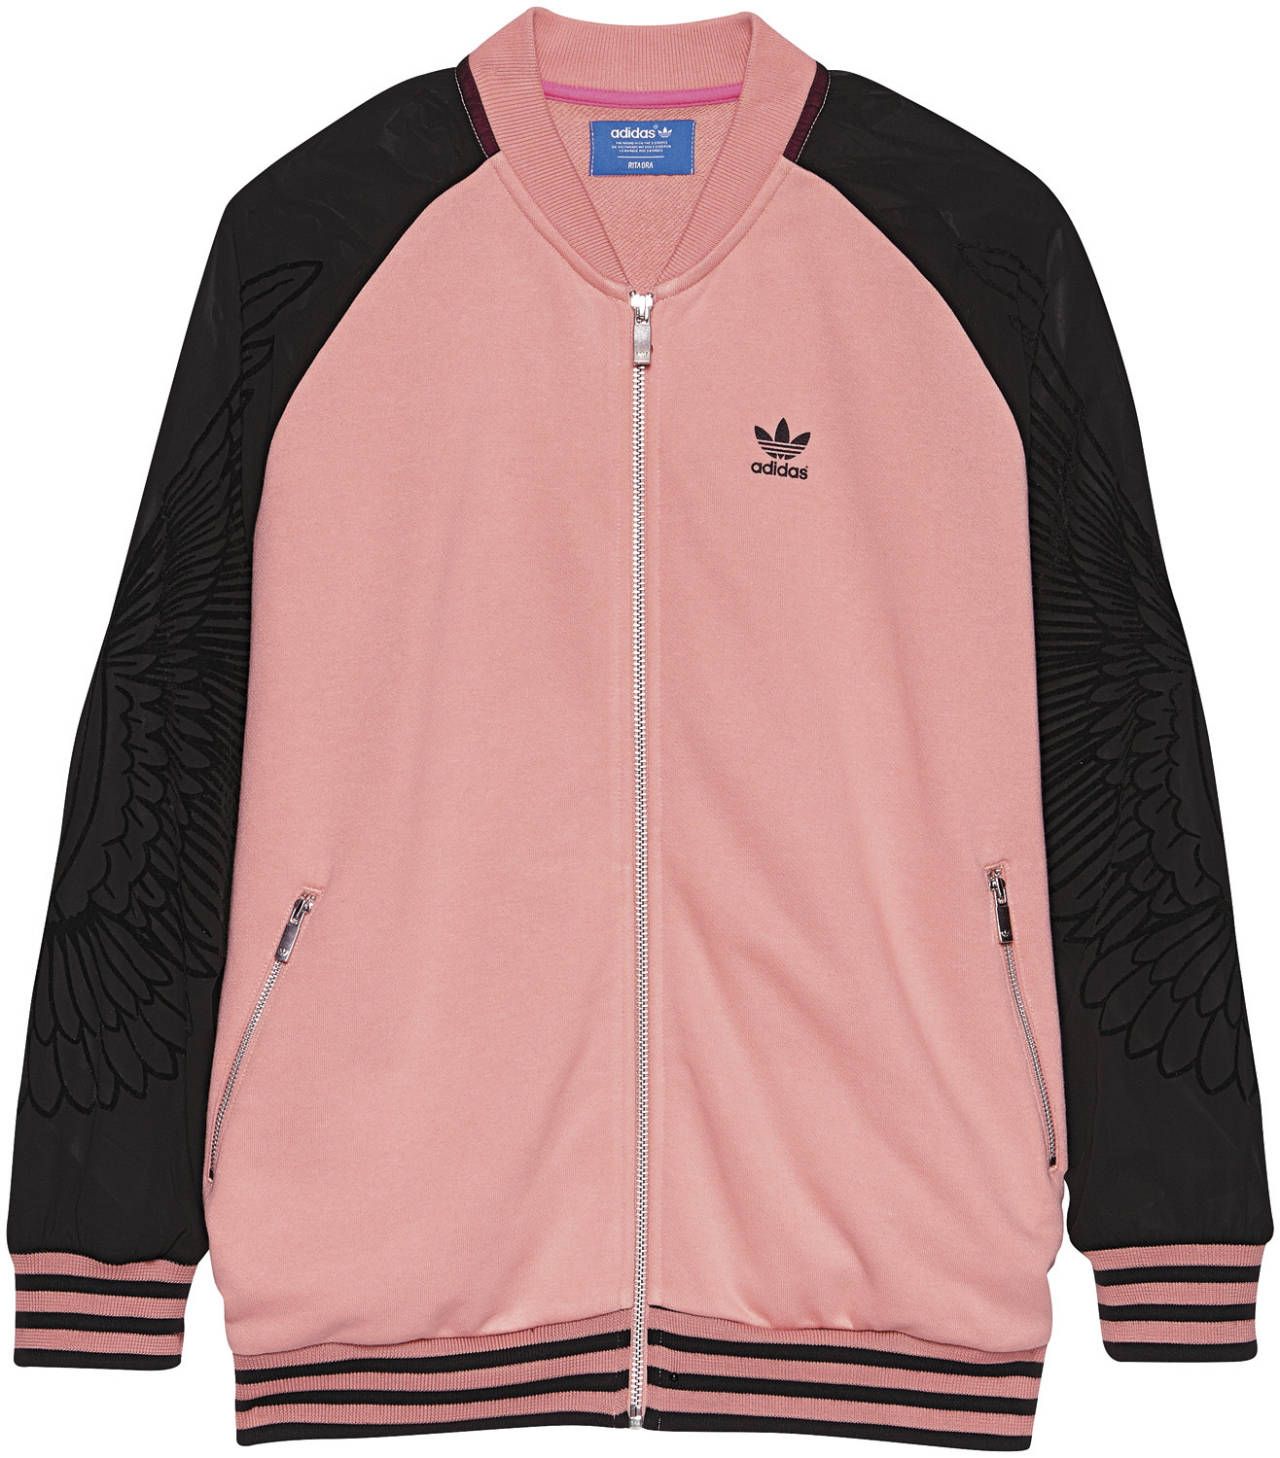 rita ora pink adidas jacket